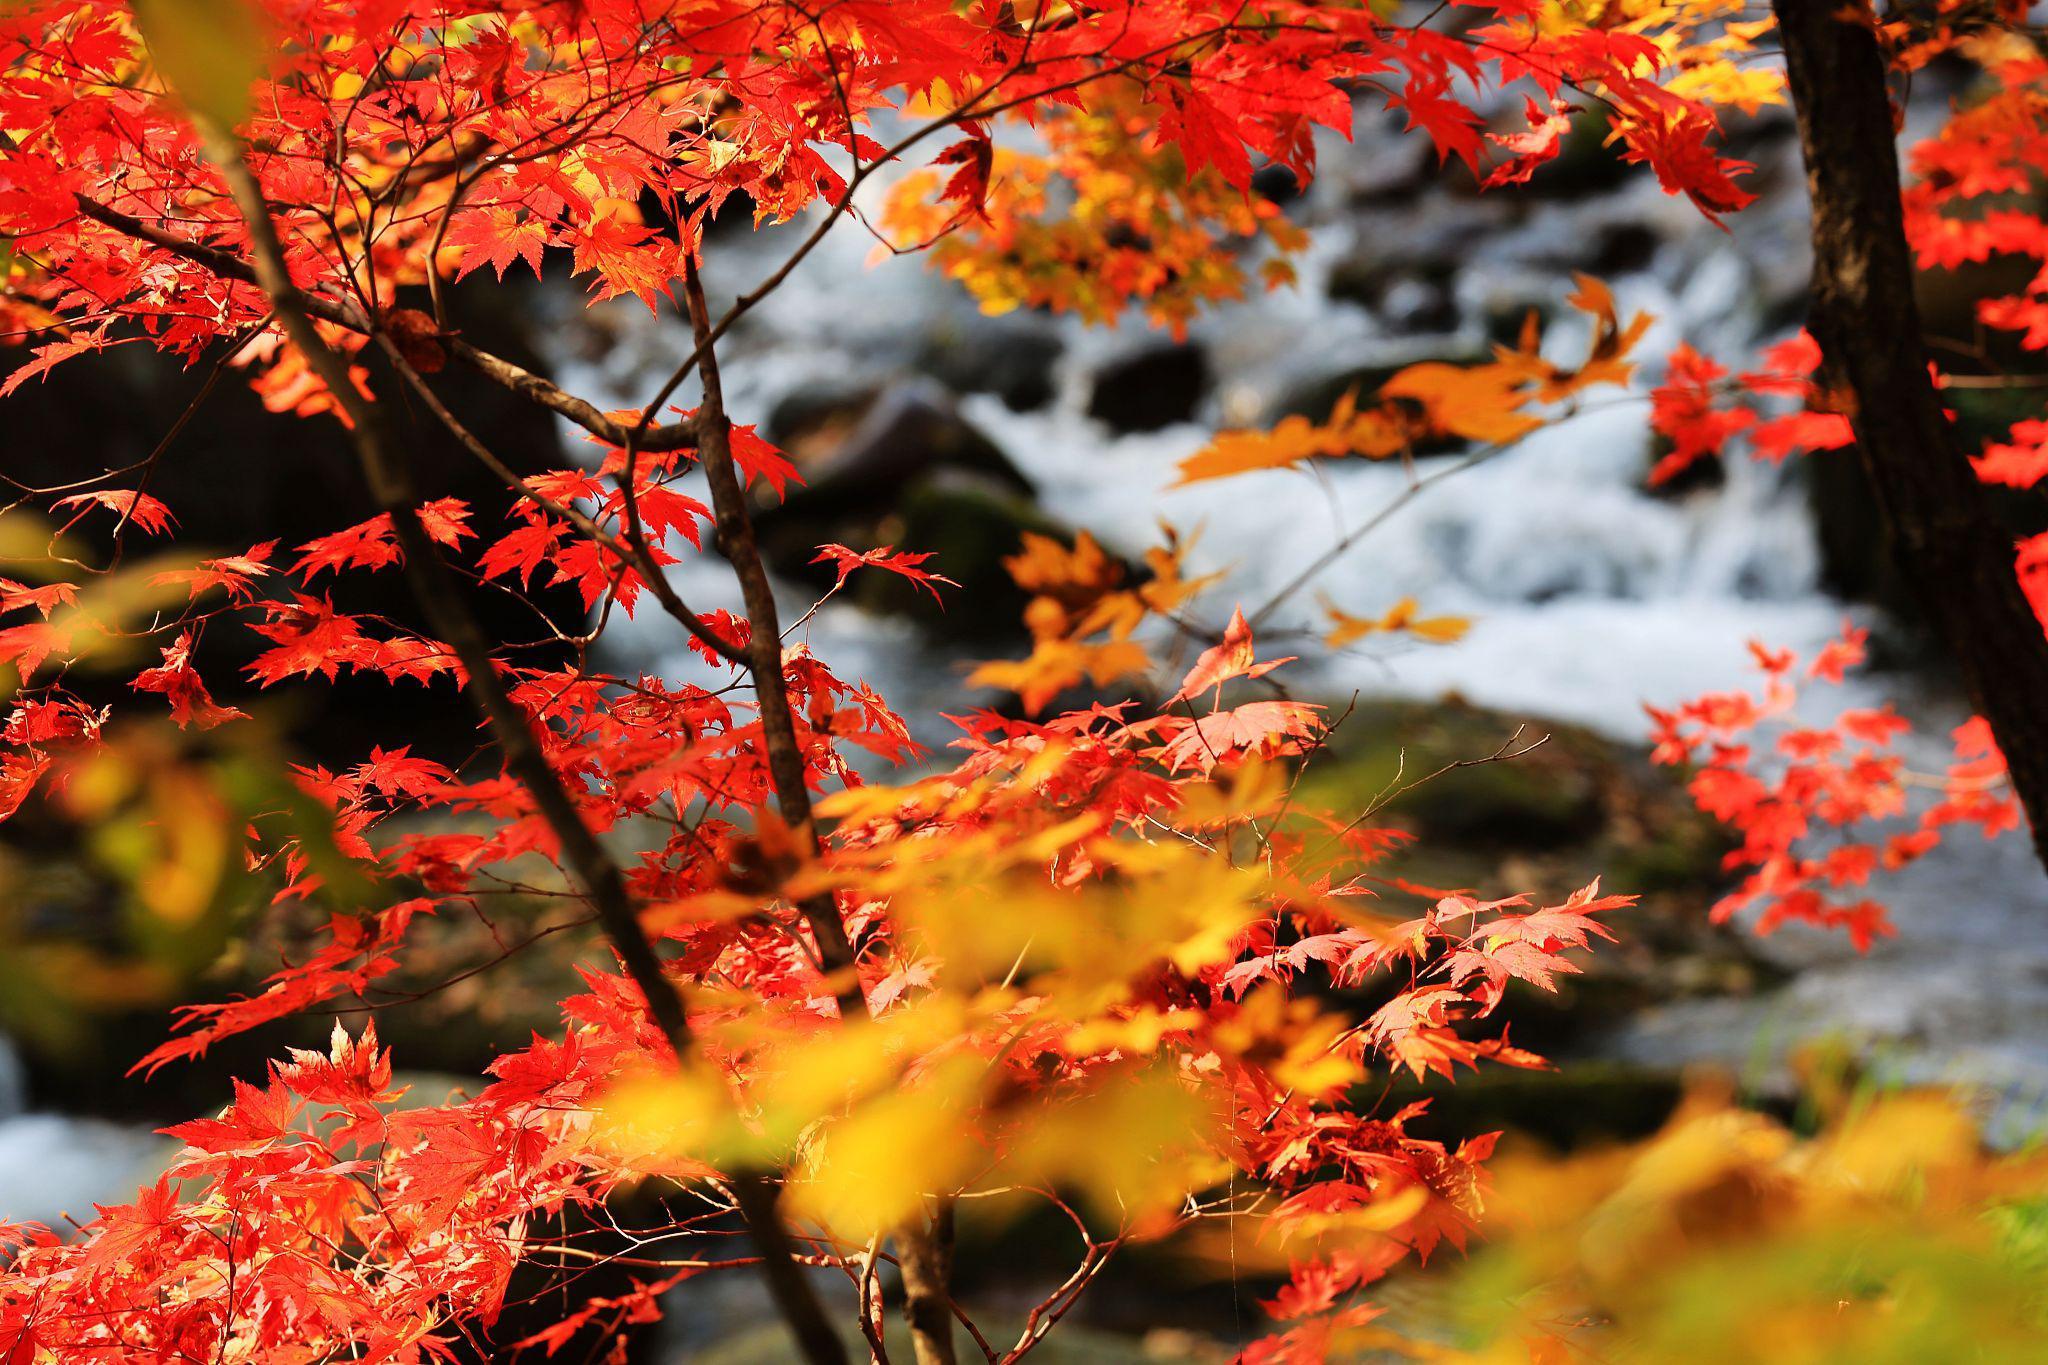 石家庄的秋天,宛如一幅流动的诗篇,每一片枫叶都在诉说着秋天的故事